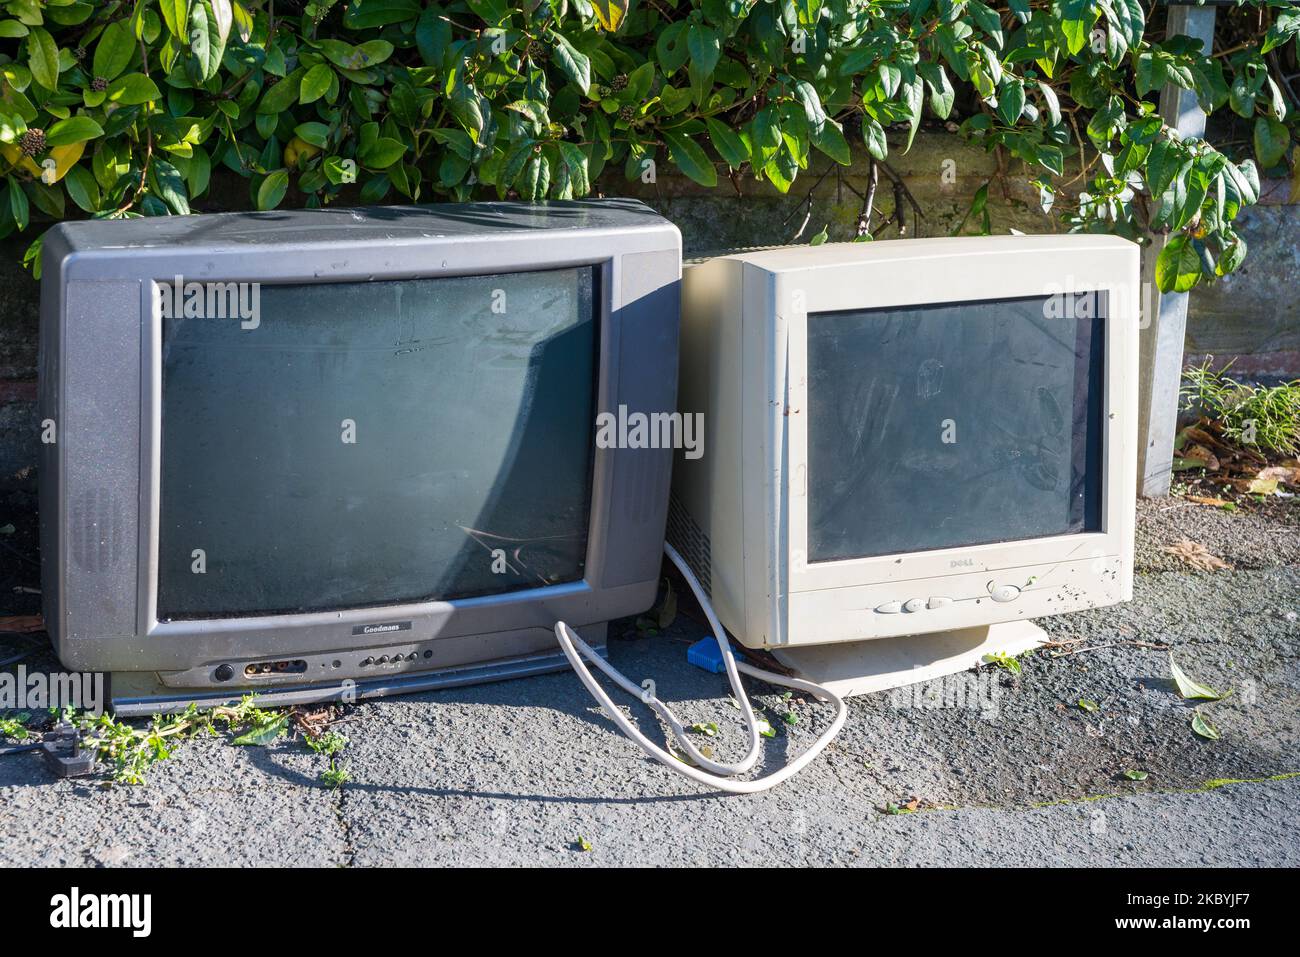 Alte röhrenfernseher und Computermonitor wurden zur Abholung oder Entsorgung auf dem Bürgersteig gelassen Stockfoto